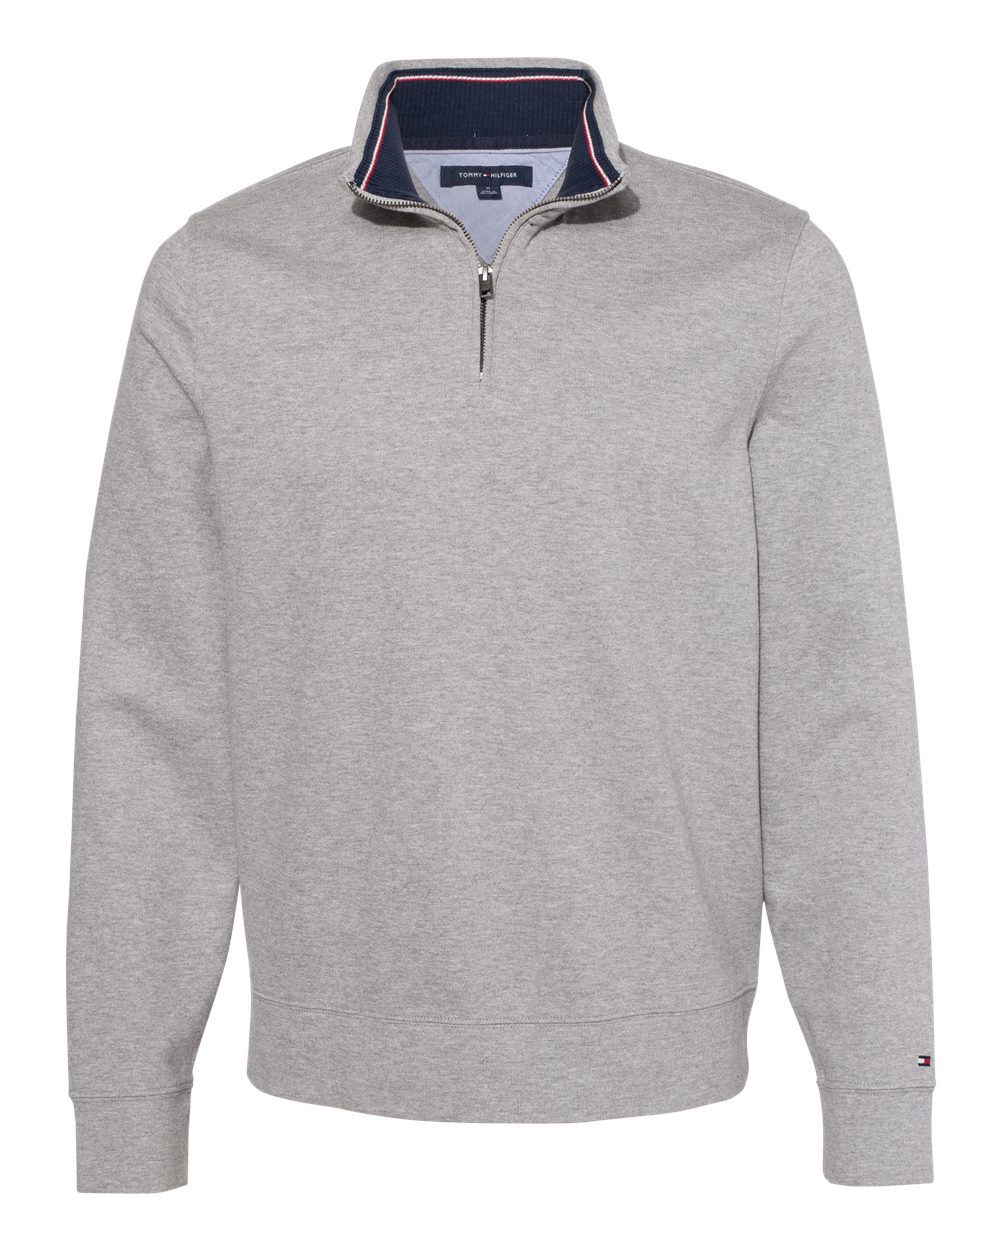 Tommy Hilfiger Quarter-Zip Pullover Sweatshirt #13H1858 Sport Grey Heather